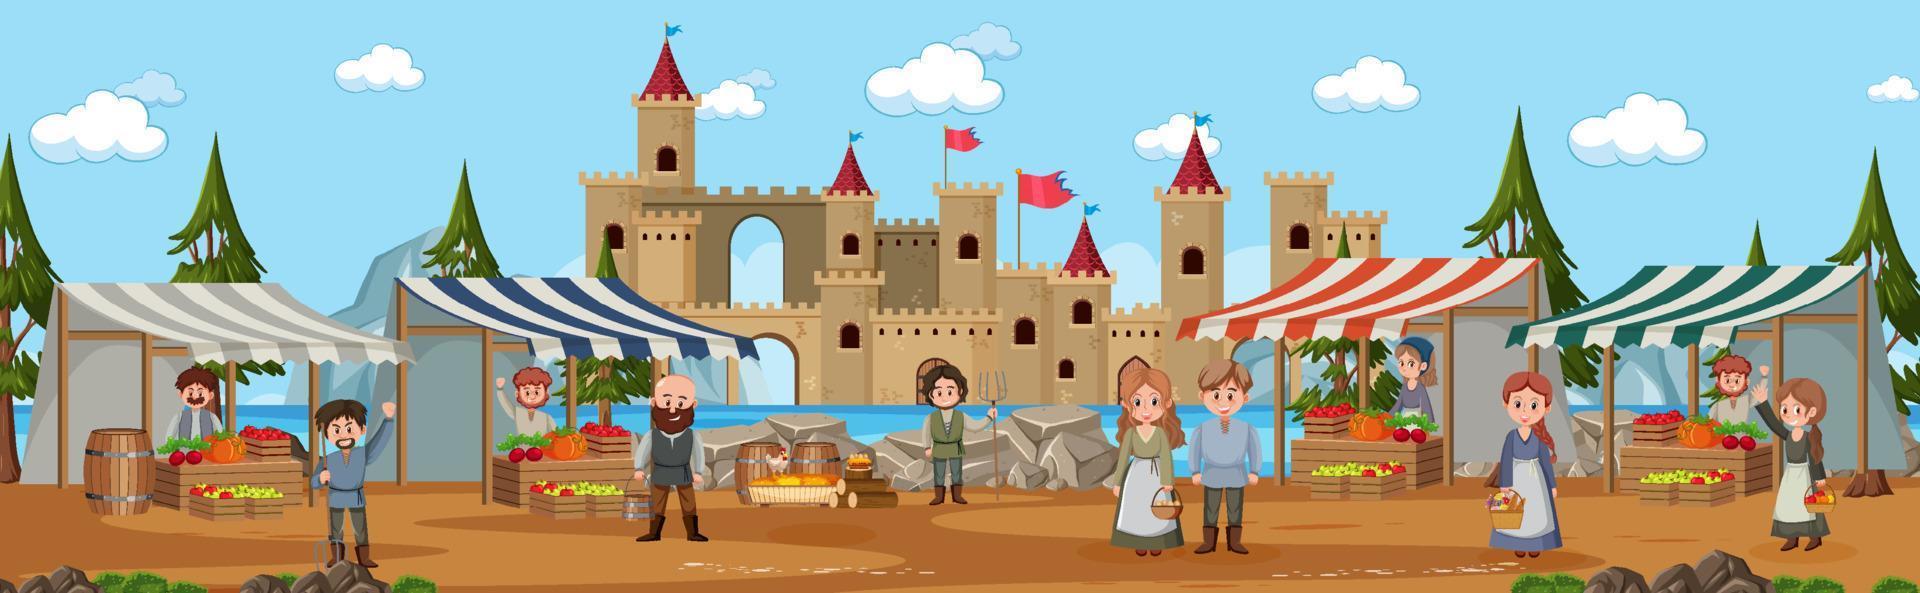 scène de ville médiévale avec des villageois au marché vecteur